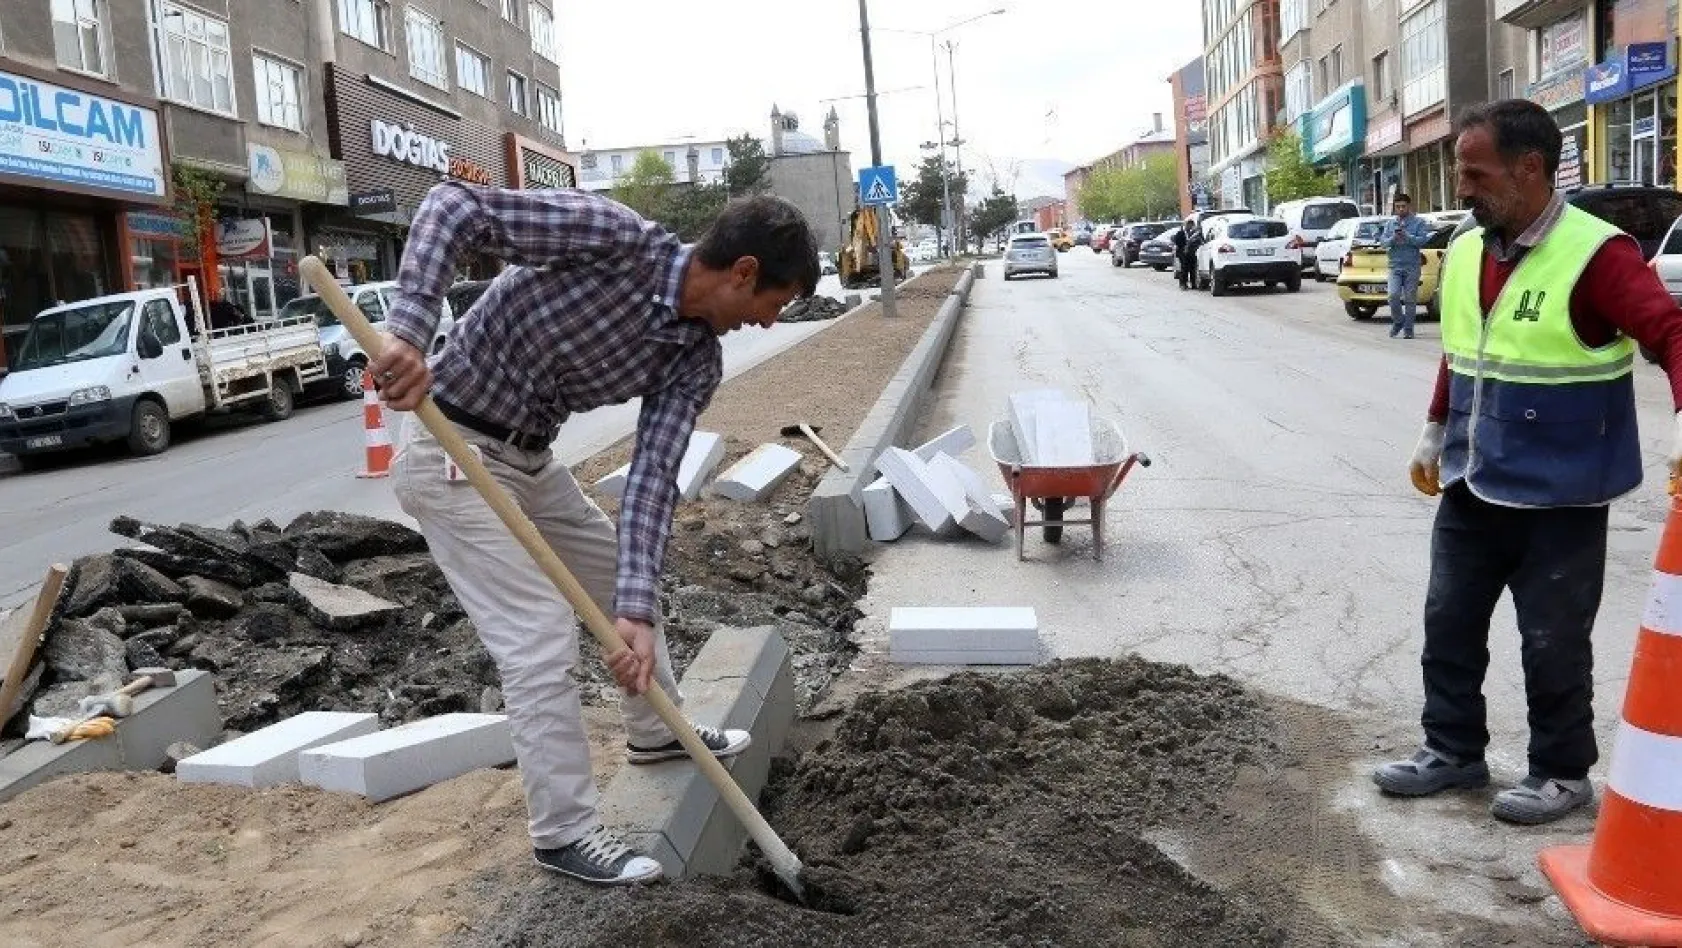 Büyükşehir orta refüjleri beton bordürlerle yeniliyor
